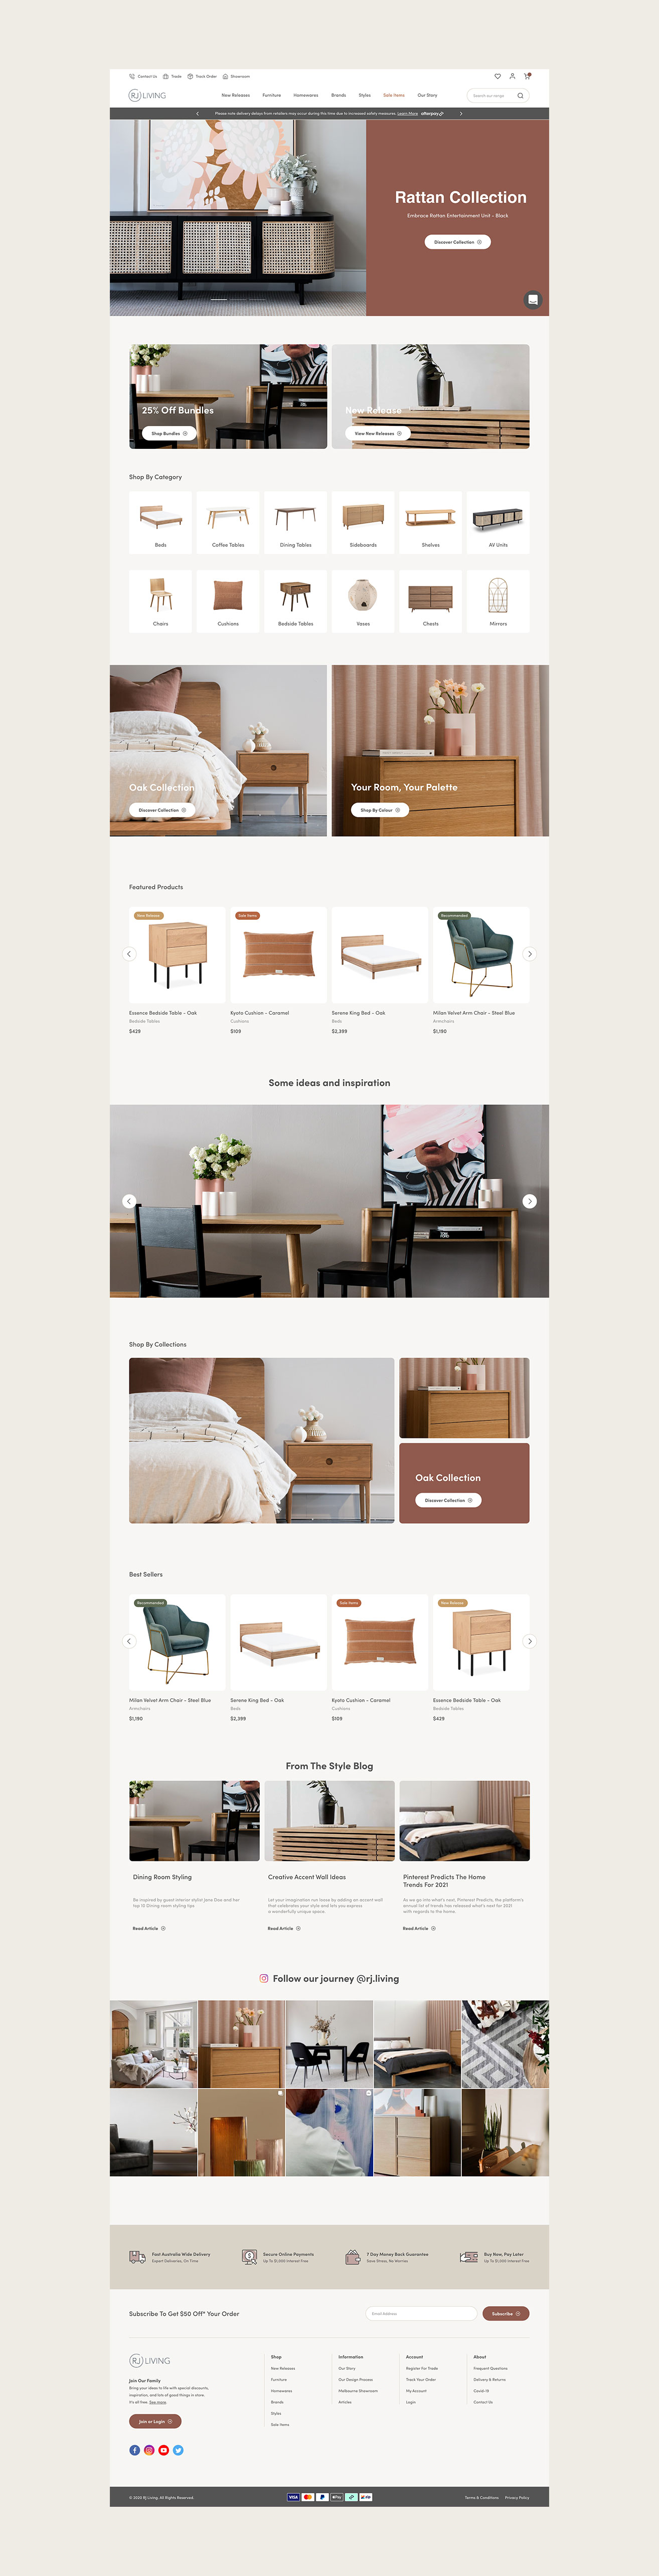 RJ Living responsive e commerce website design by Kaliber Studio